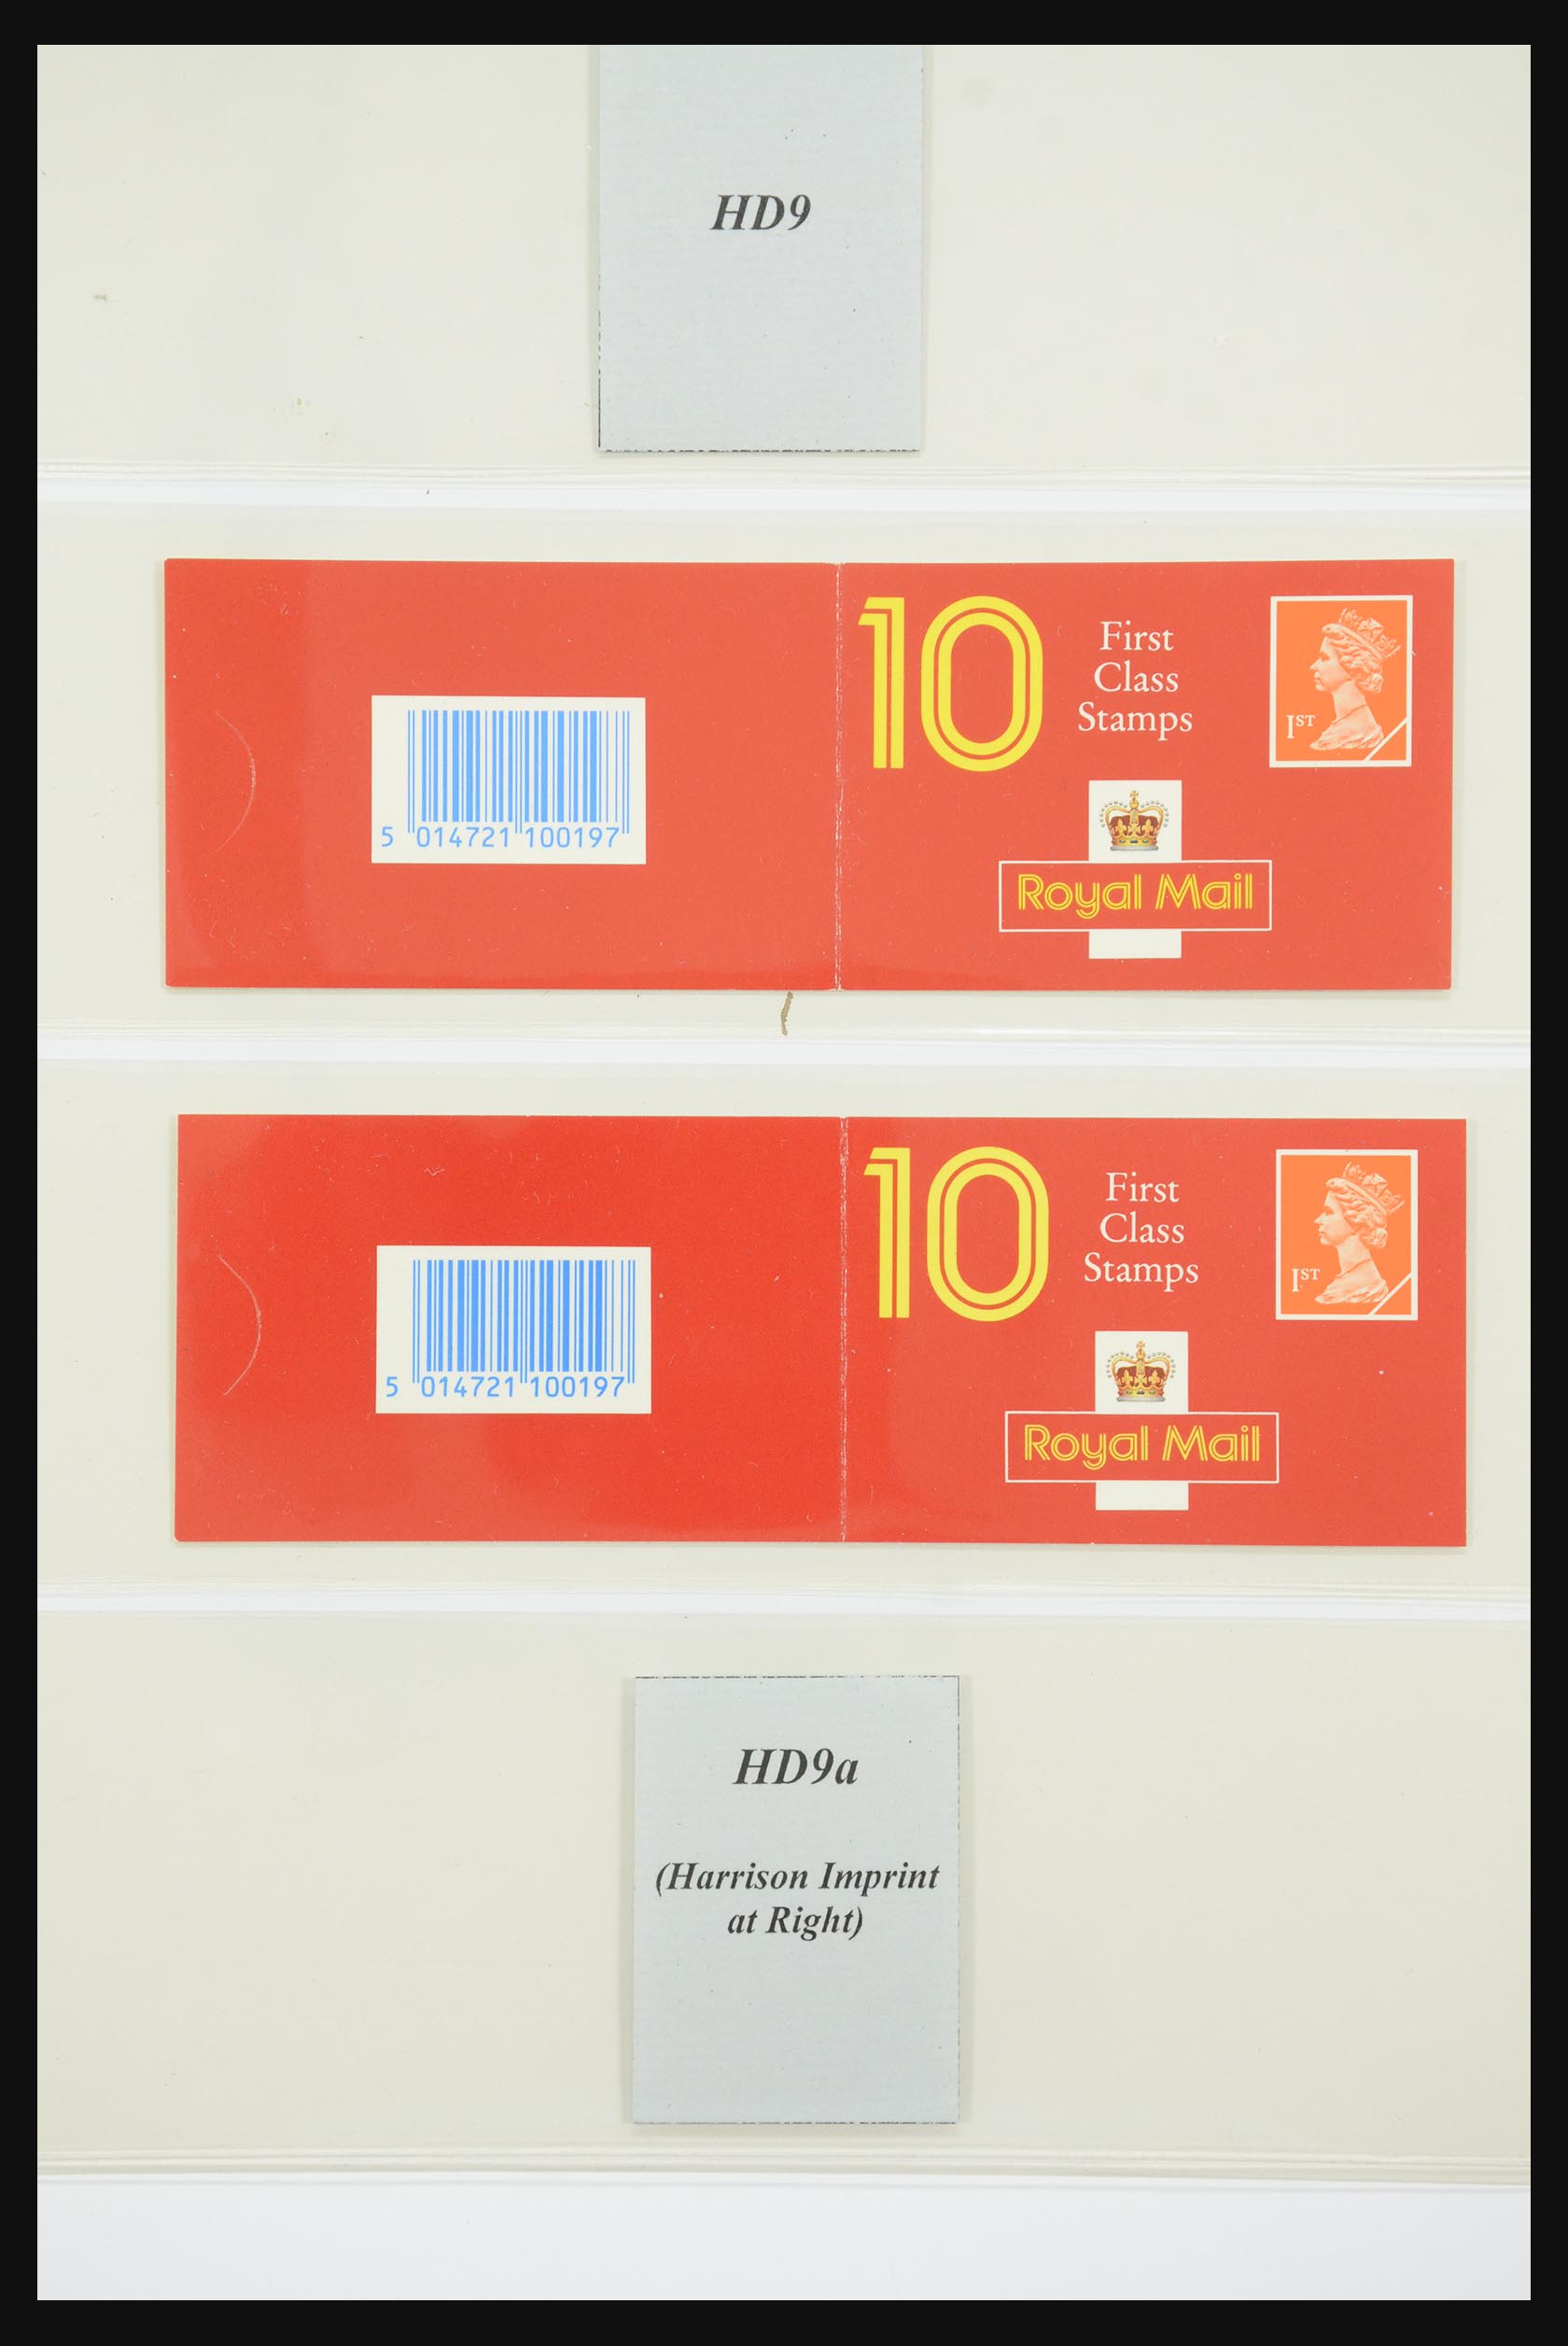 31960 111 - 31960 Engeland postzegelboekjes 1989-2000.